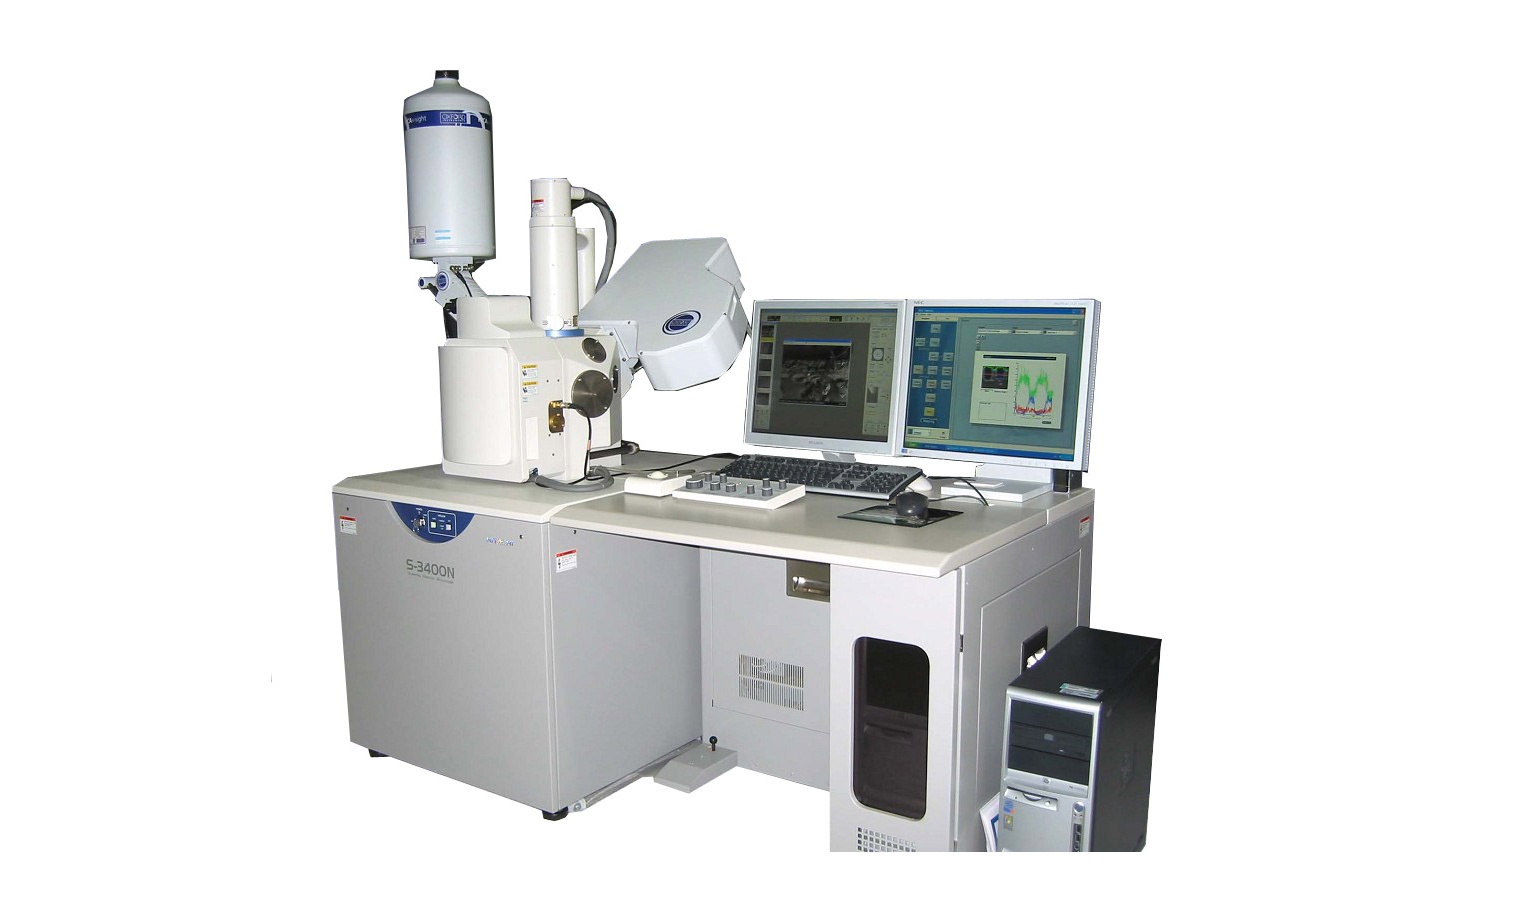 西安邮电大学扫描电子显微镜系统等仪器设备采购项目招标